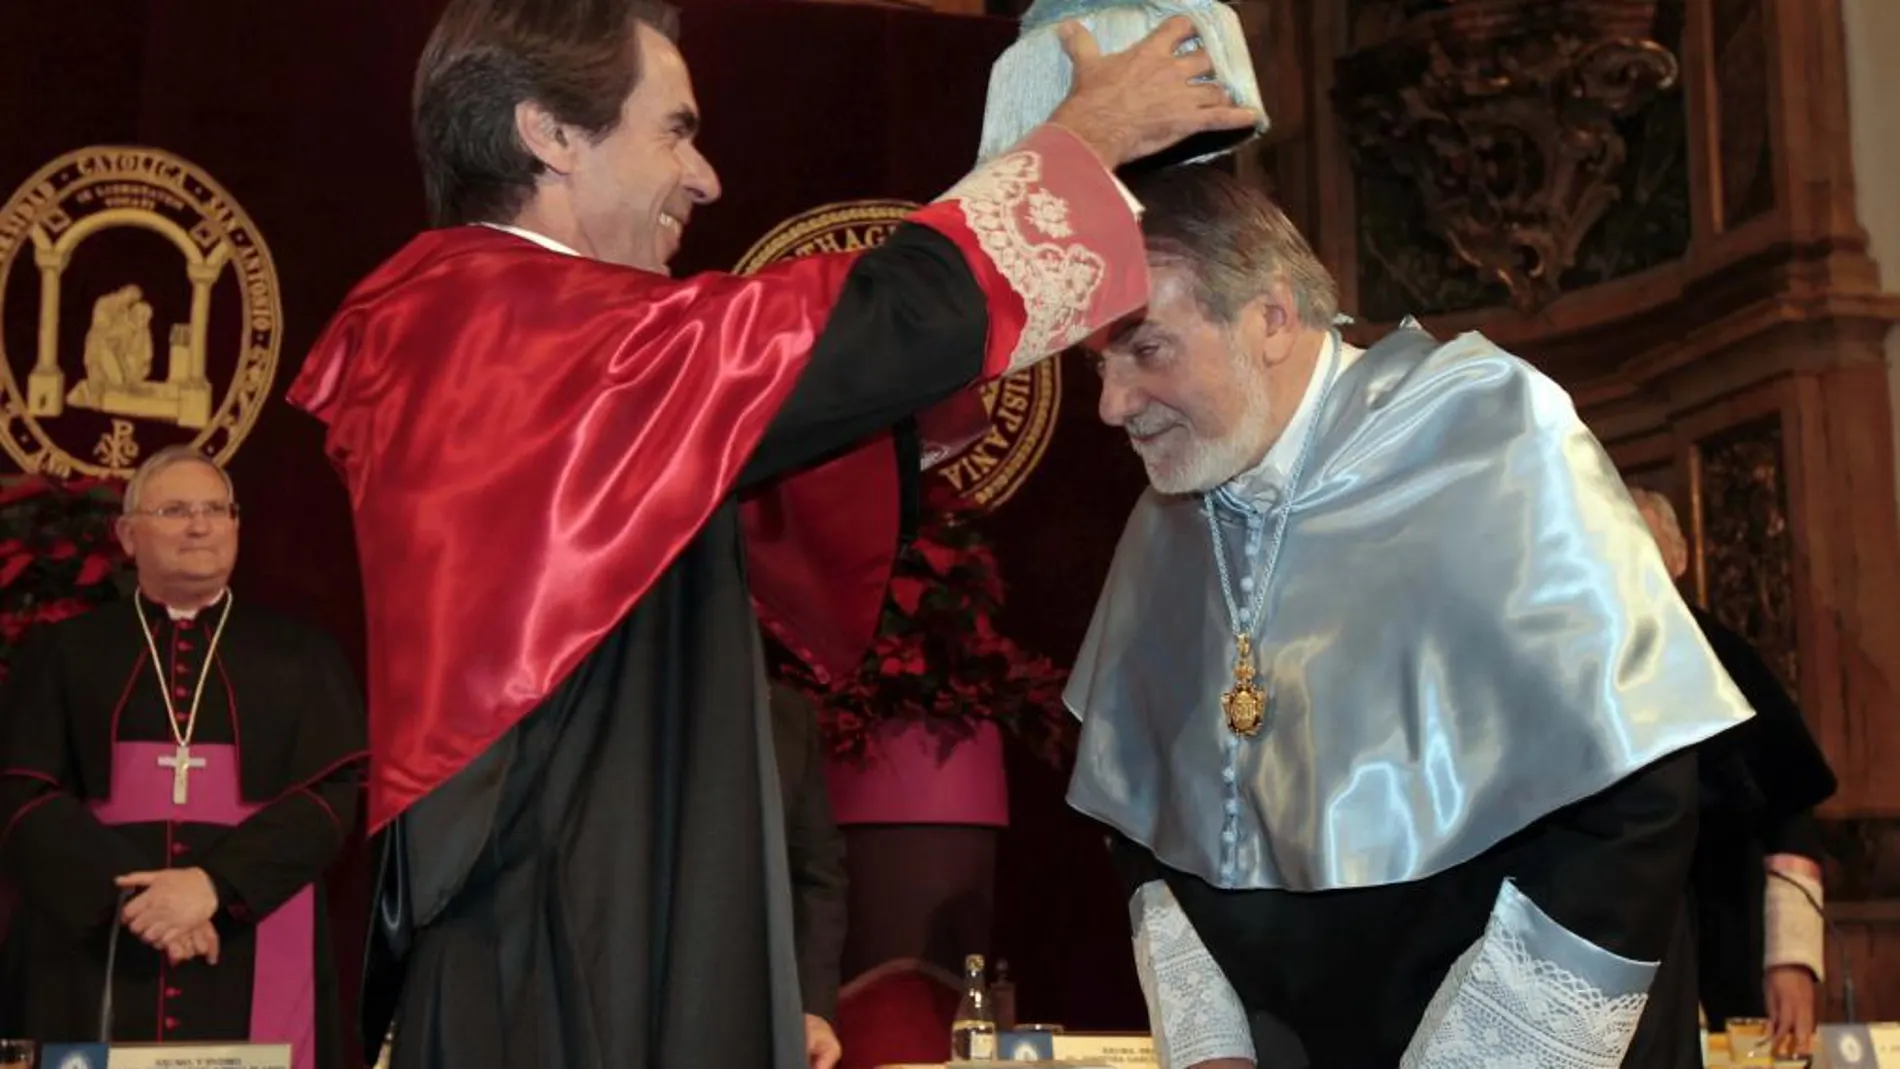 El exministro del Interior Jaime Mayor Oreja recibe el birrete de manos del ex presidente del Gobierno José María Aznar